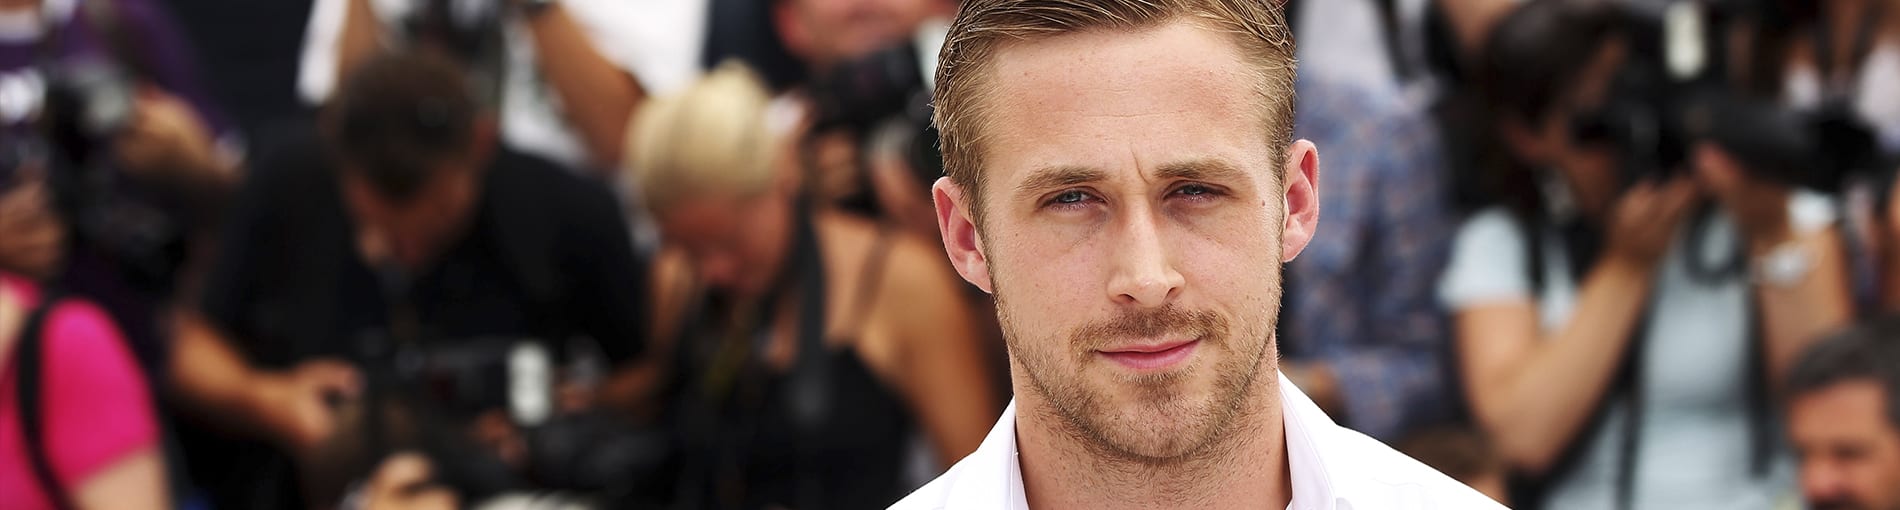 ¿Quién es Ryan Gosling? 8 curiosidades que no sabías sobre él.